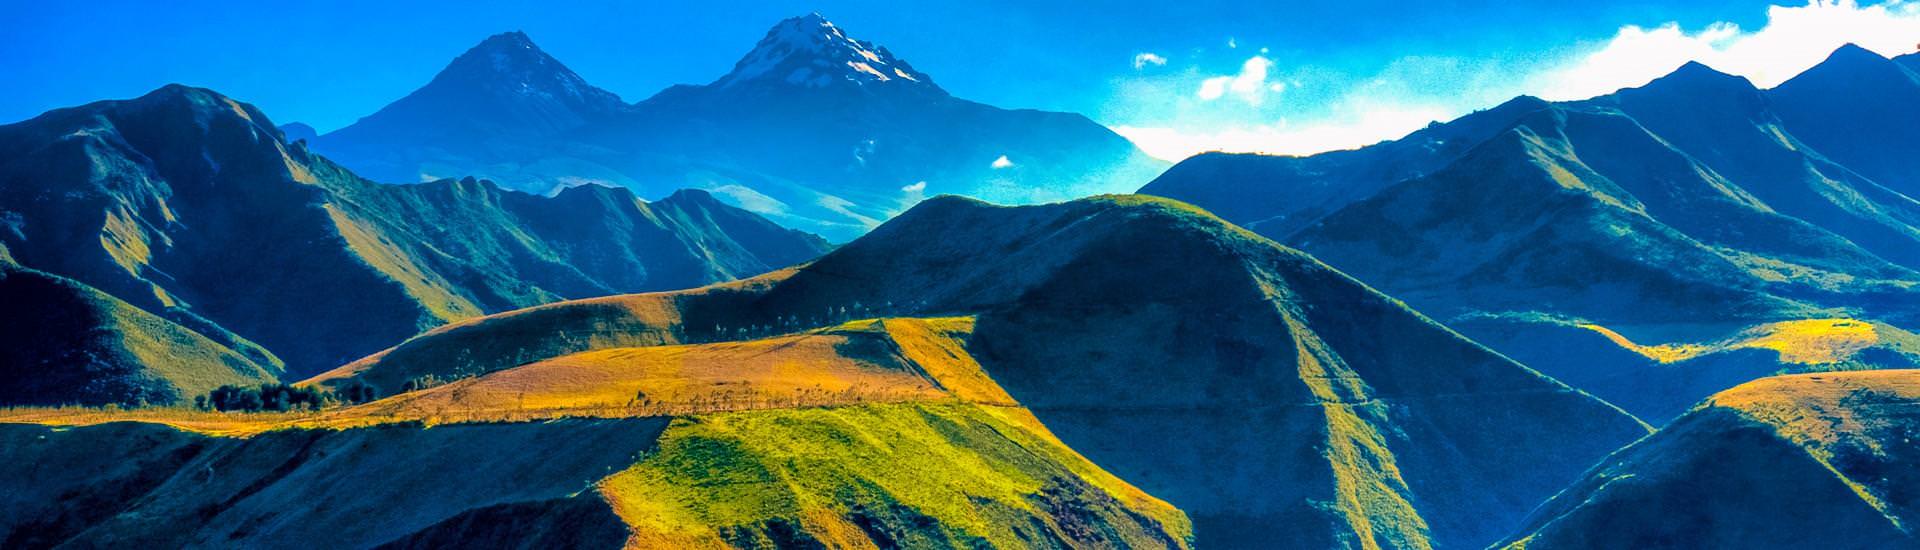 Der Vulkan Illiniza in der West-Kordillere der Anden |  Dr. Heiko Beyer, Vision 21 / Chamleon